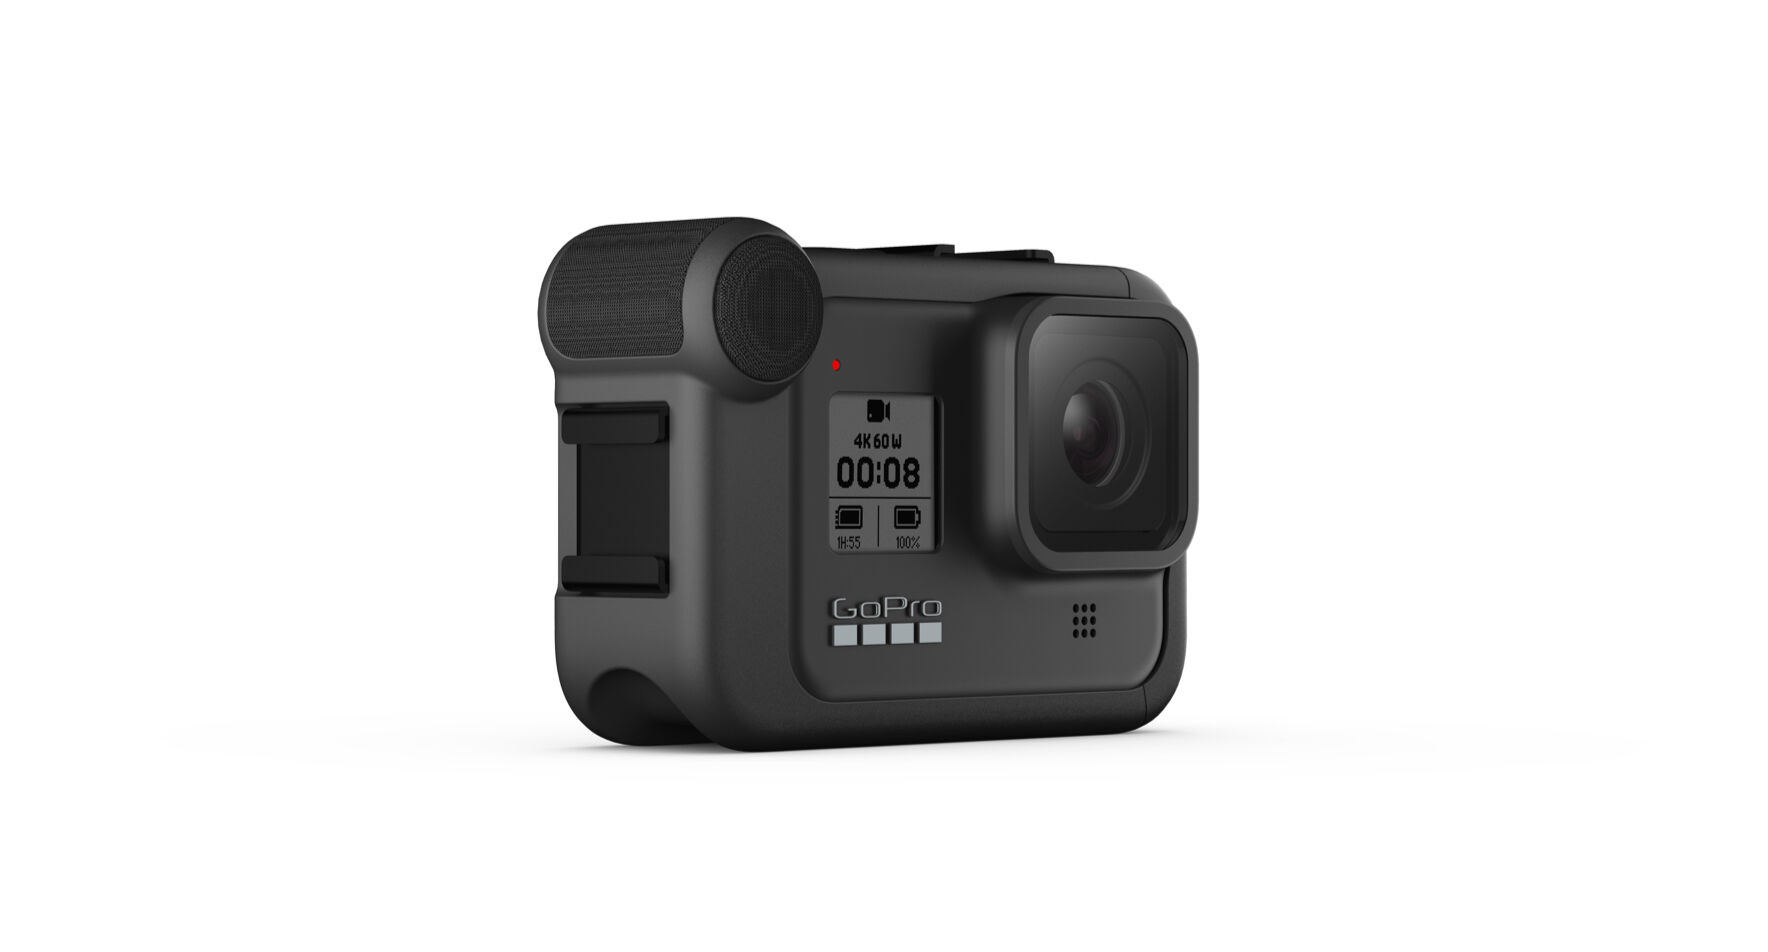 Pour une image de meilleure qualité, on peut désormais utiliser sa GoPro comme une webcam. © GoPro